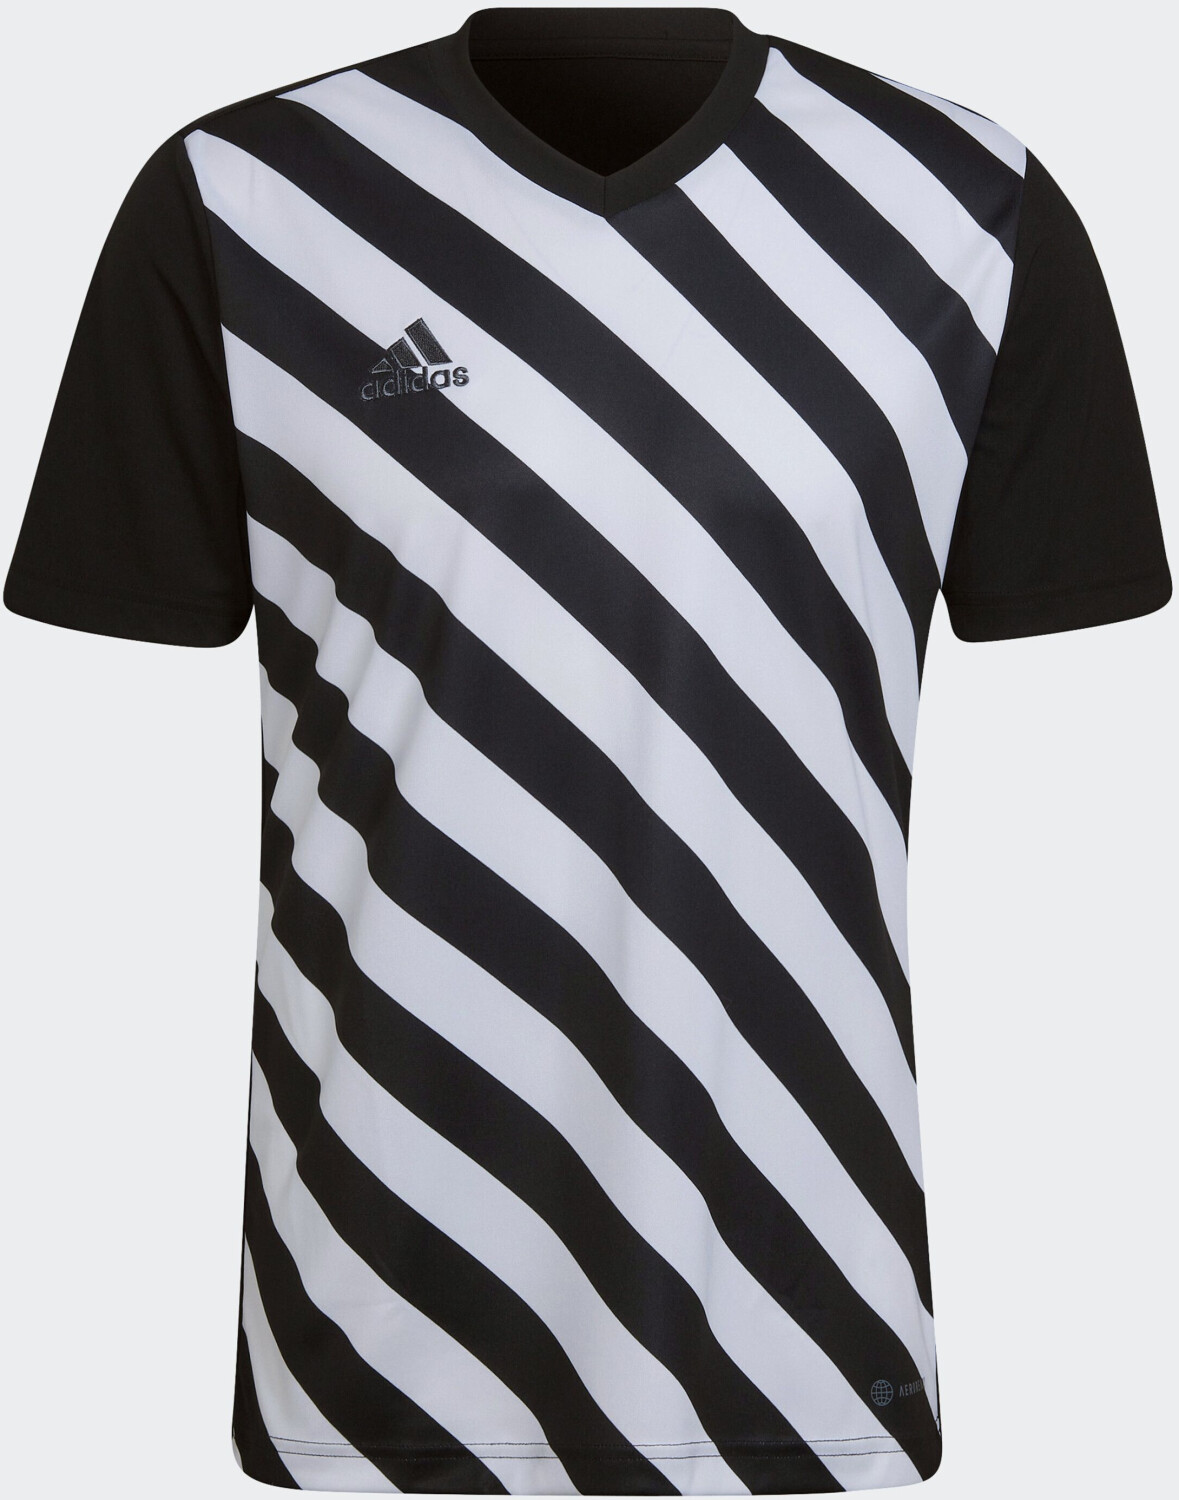 Photos - Football Kit Adidas Entrada 22 Graphic Trikot black/white 